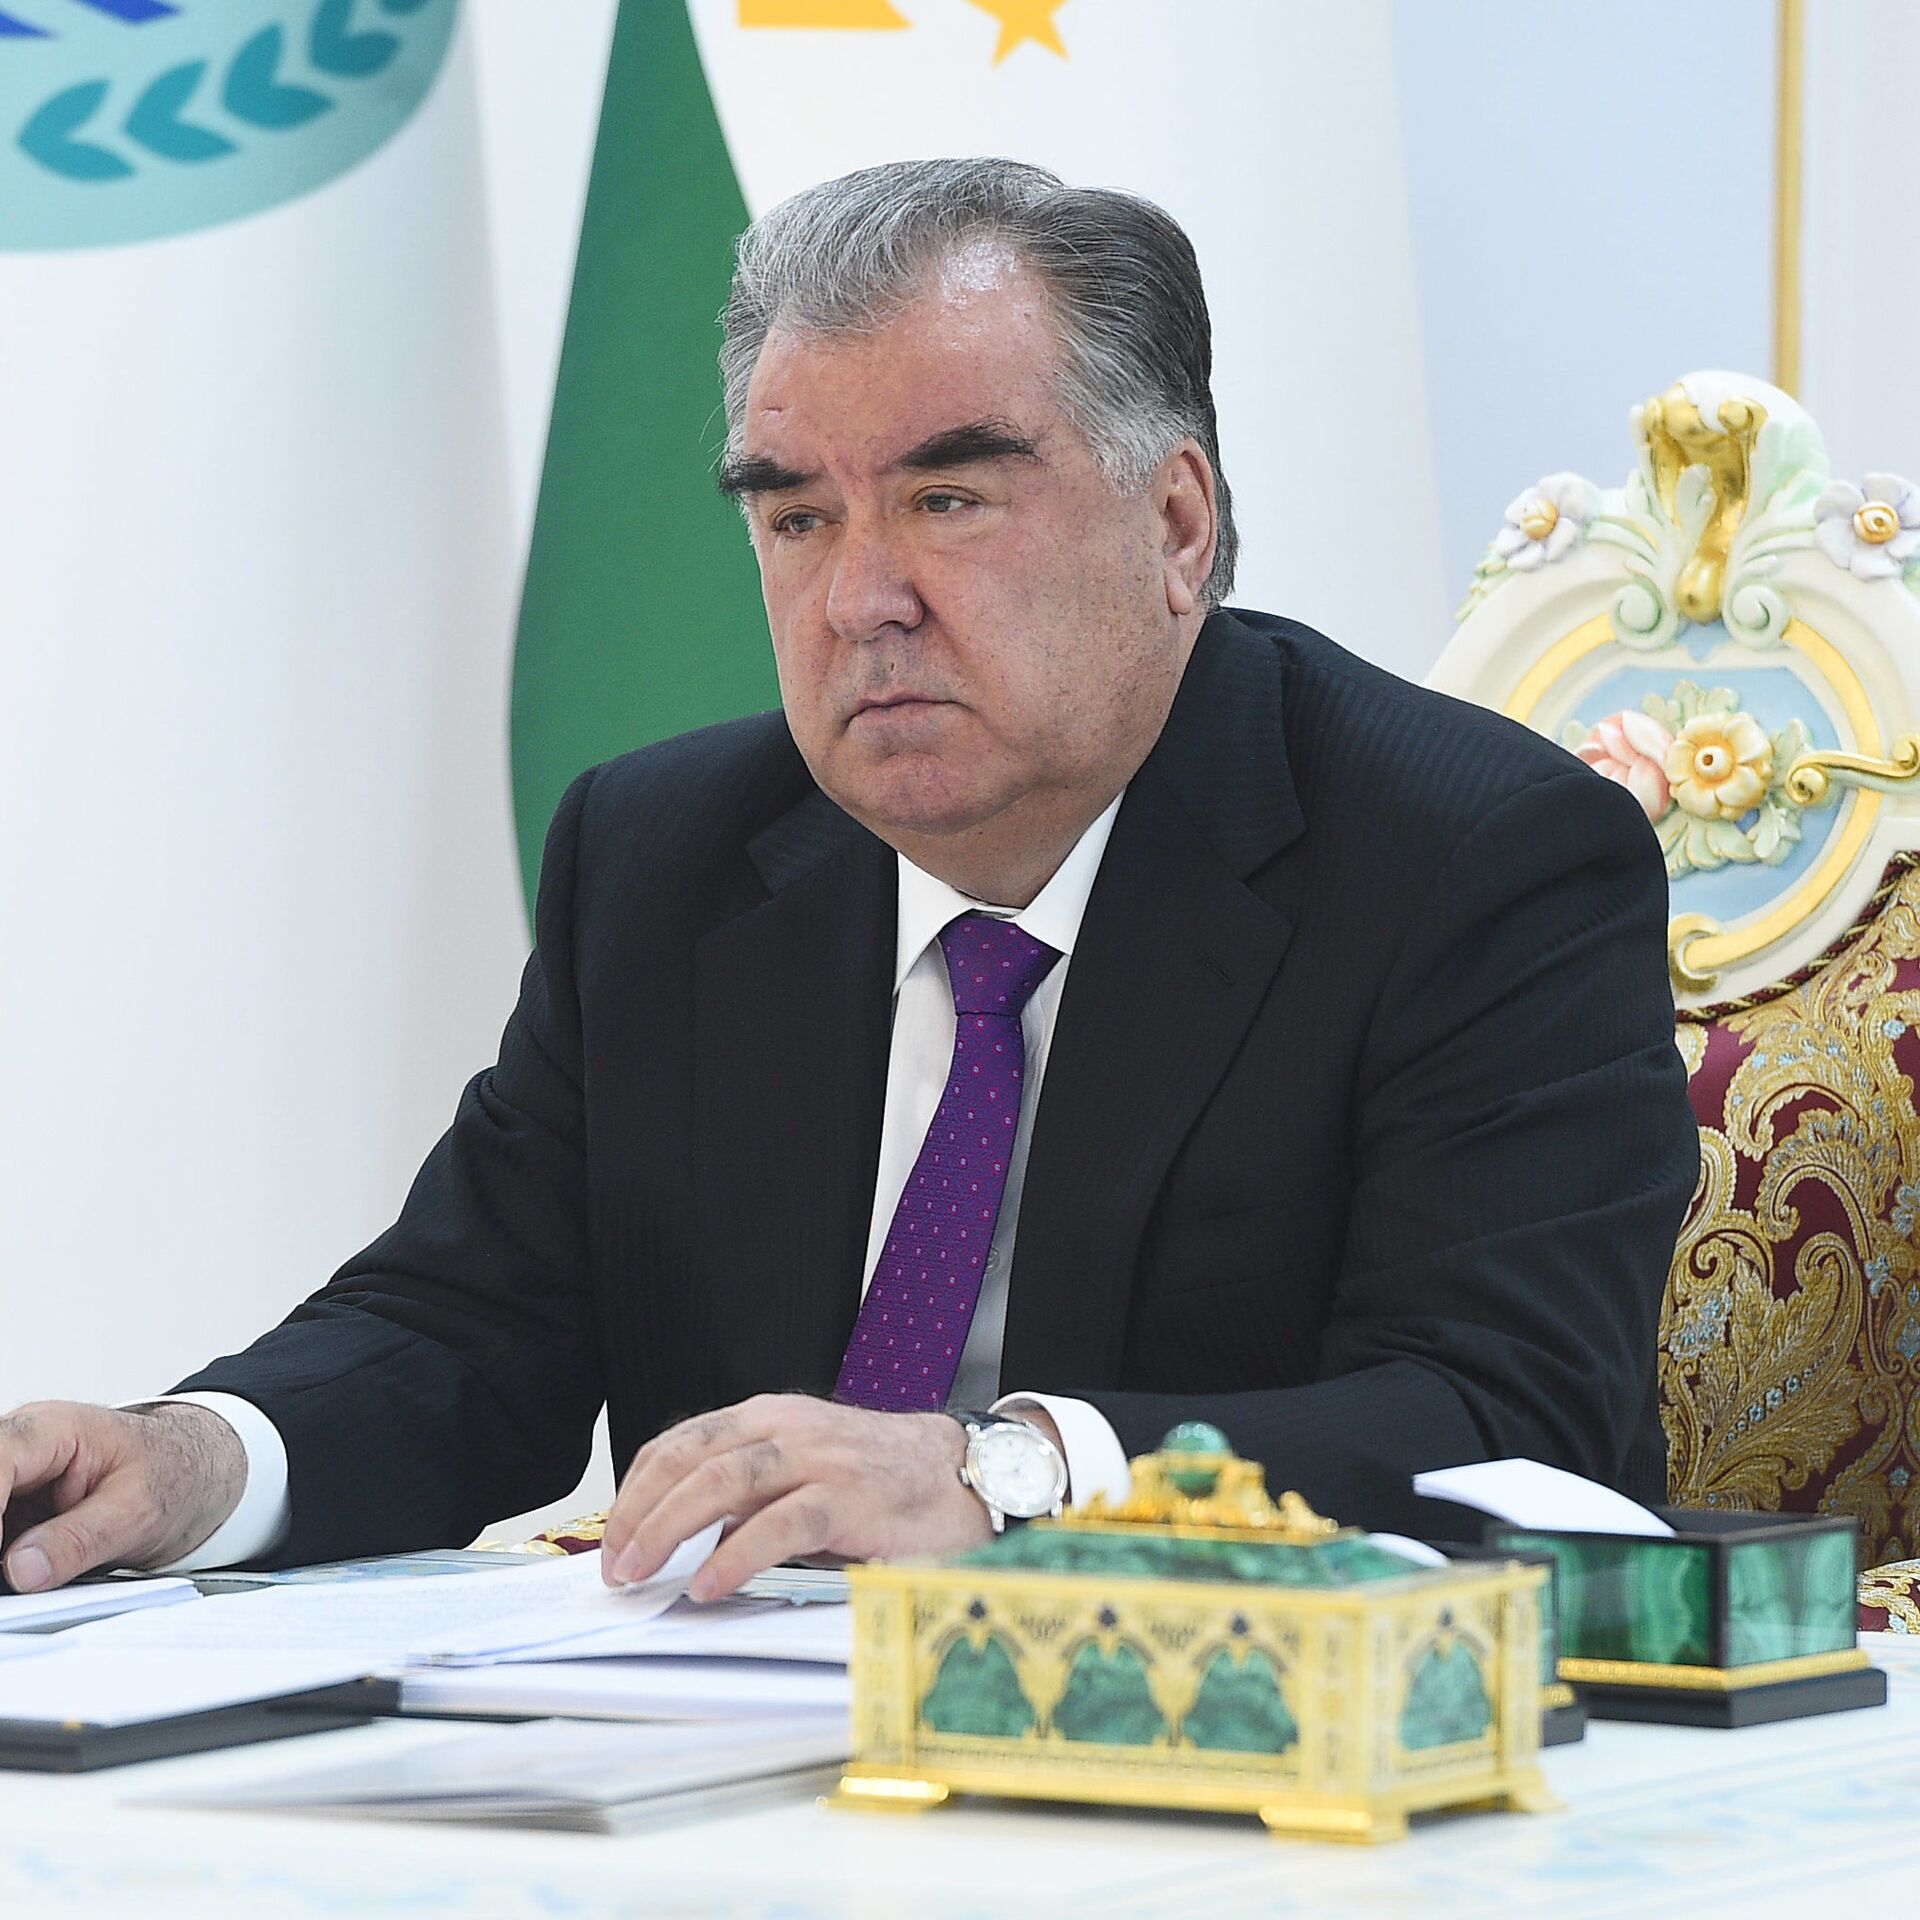 Заявление президента таджикистана. Эмомали Рахмон. Фото президента Таджикистана Эмомали Рахмон. Эмомали Рахмон 1992.